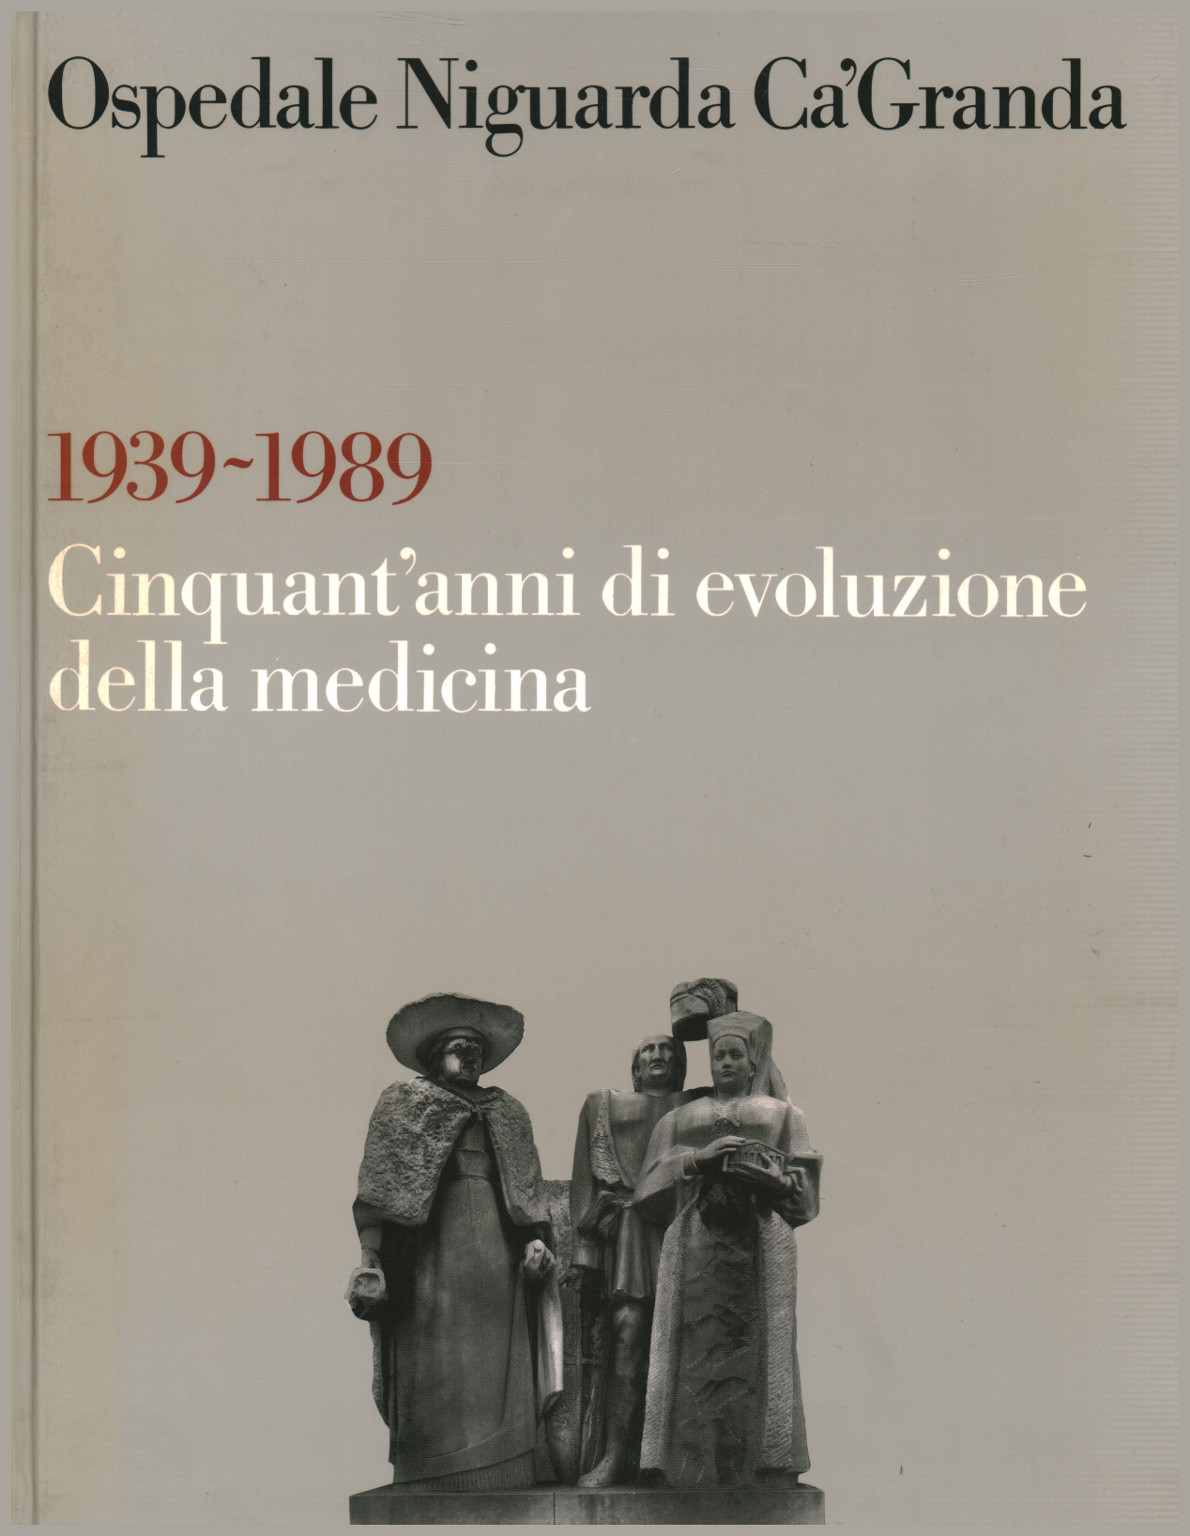 1939-1989 Cinquant'anni di evoluzione della medic, s.a.